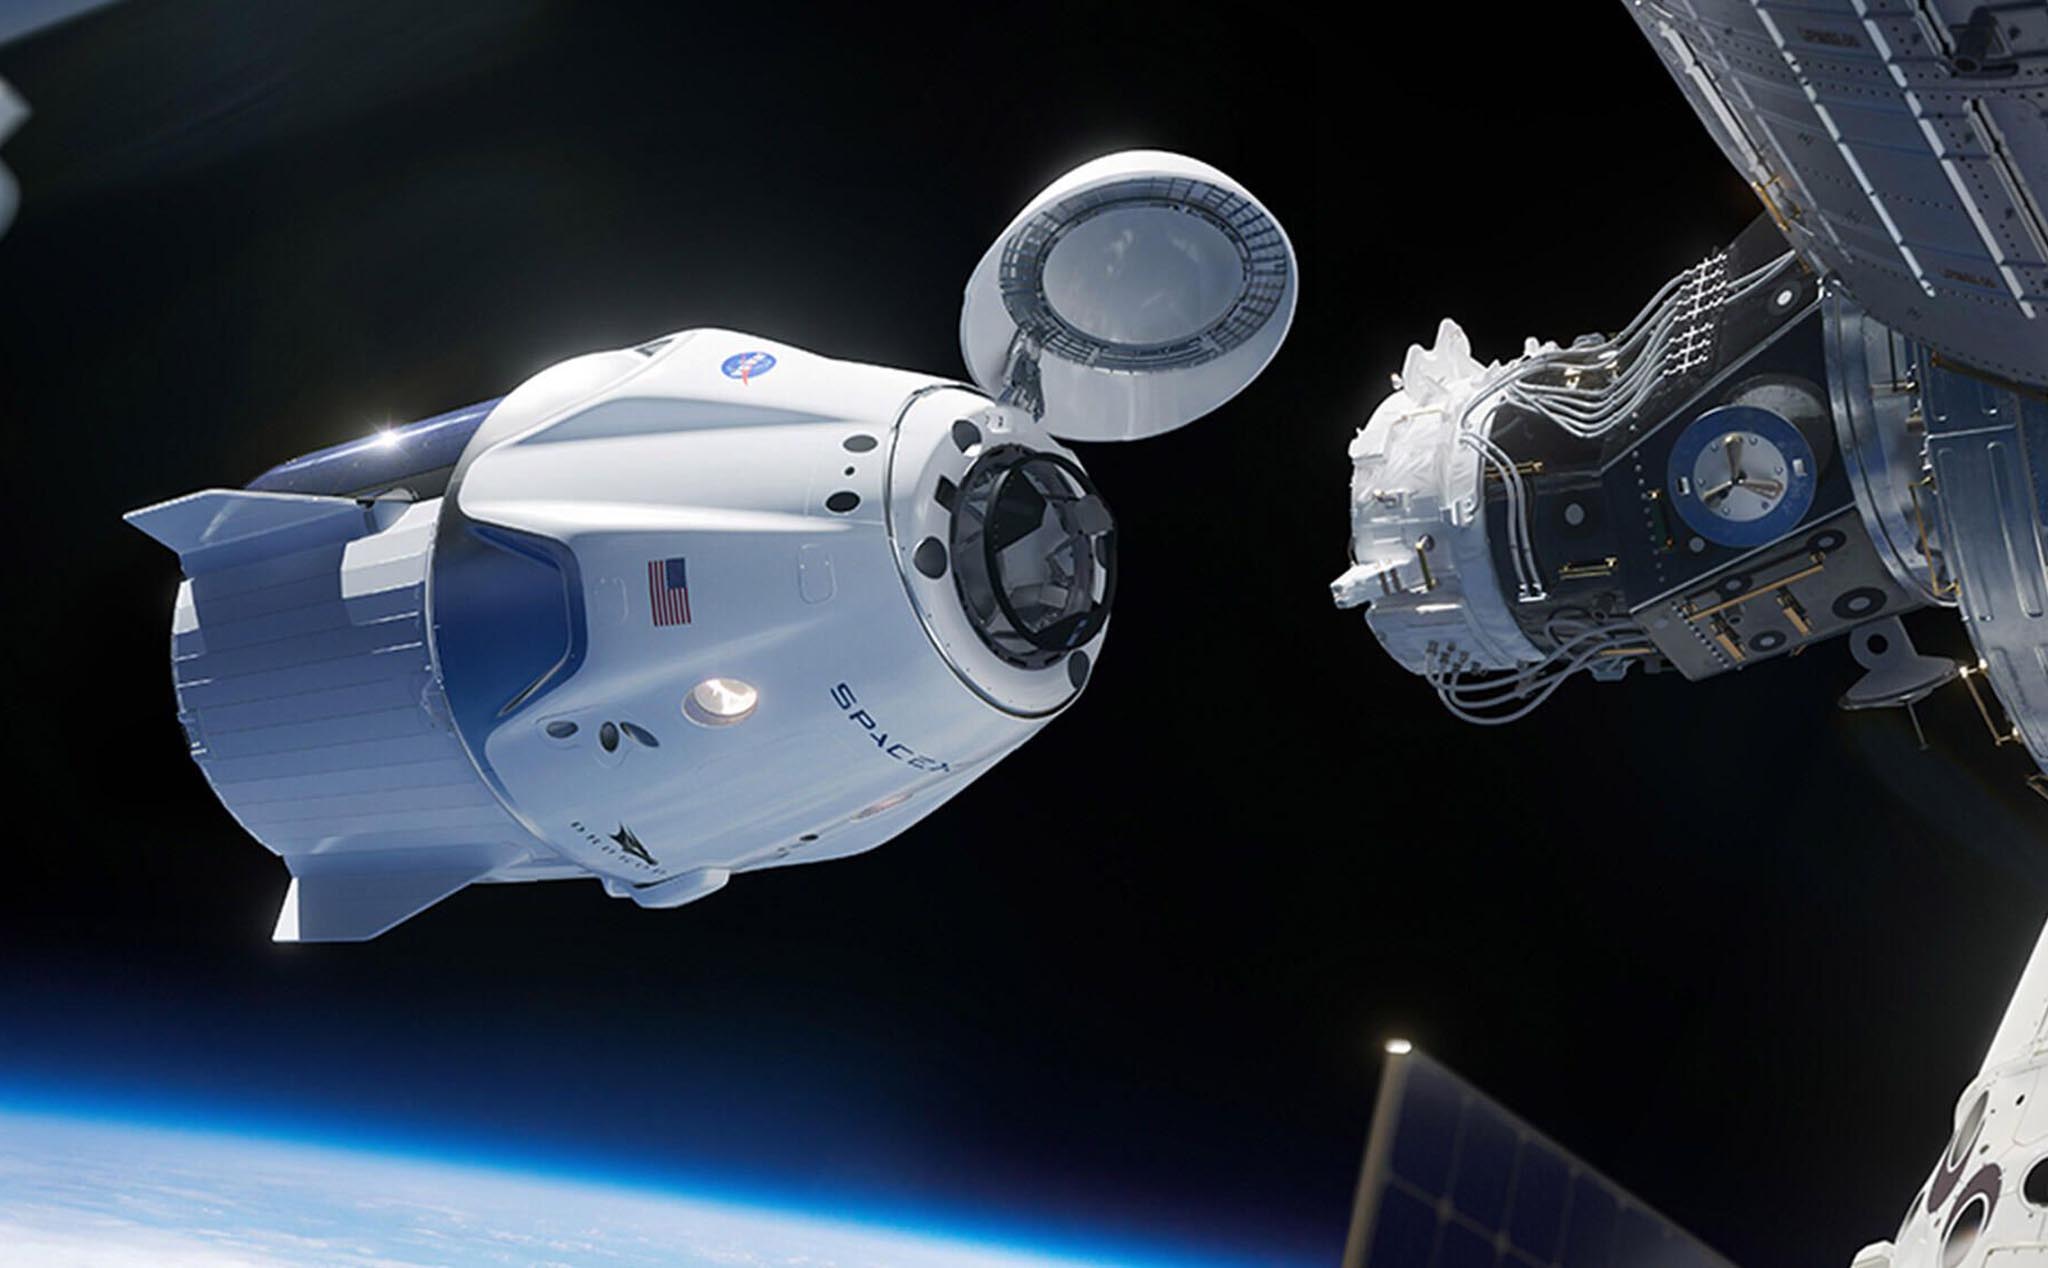 Nhiệm vụ SpaceX Demo-2: Lần đầu tiên SpaceX đưa người lên trạm ISS, sẽ có cả livestream trực tiếp